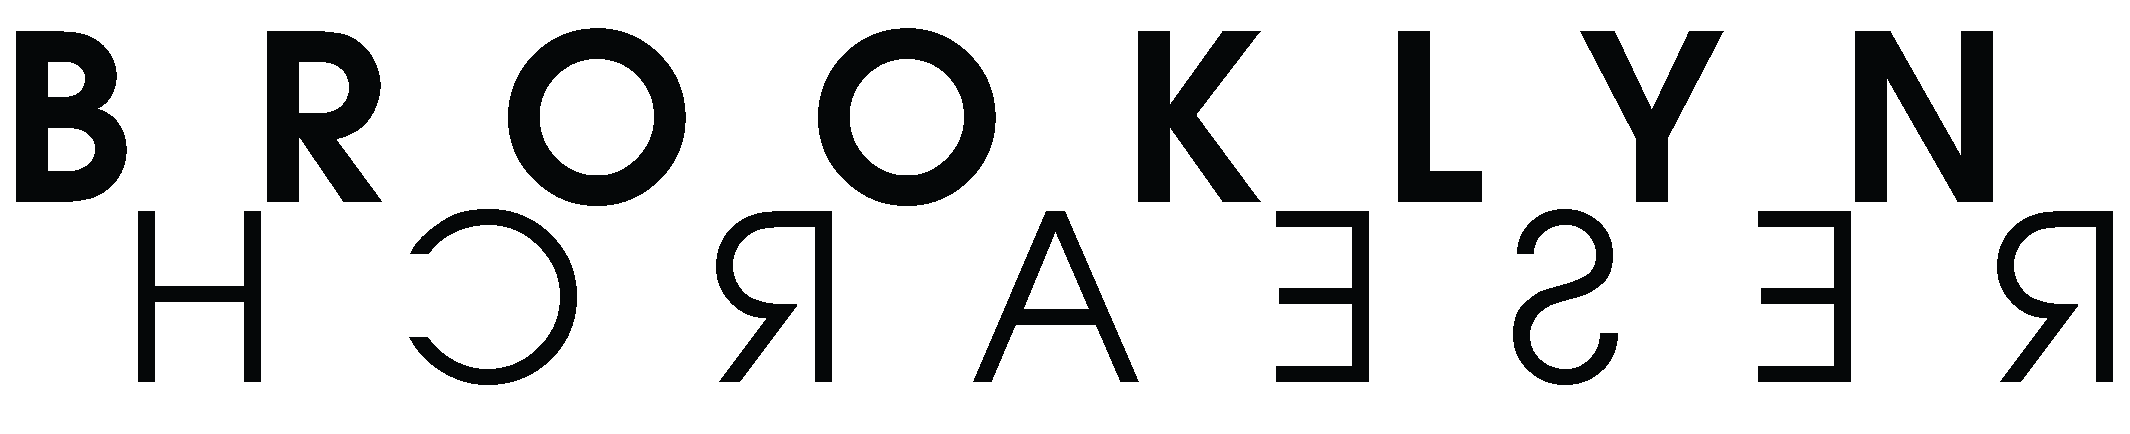 brooklynresearch.org logo